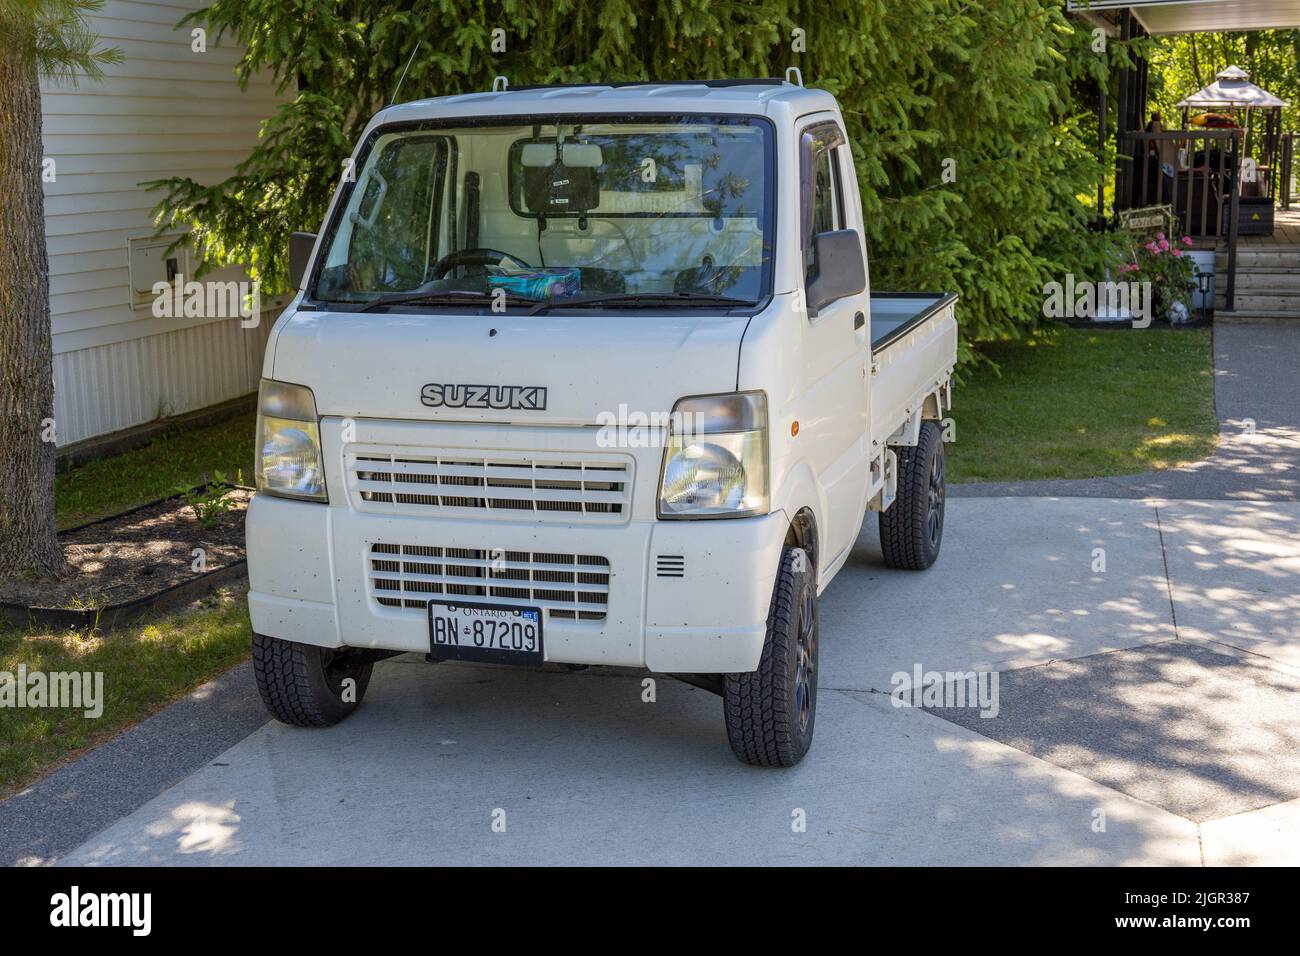 Japonés Carry Micro Suzuki Pick Up Truck a la derecha, estacionado en Ontario, Canadá Foto de stock